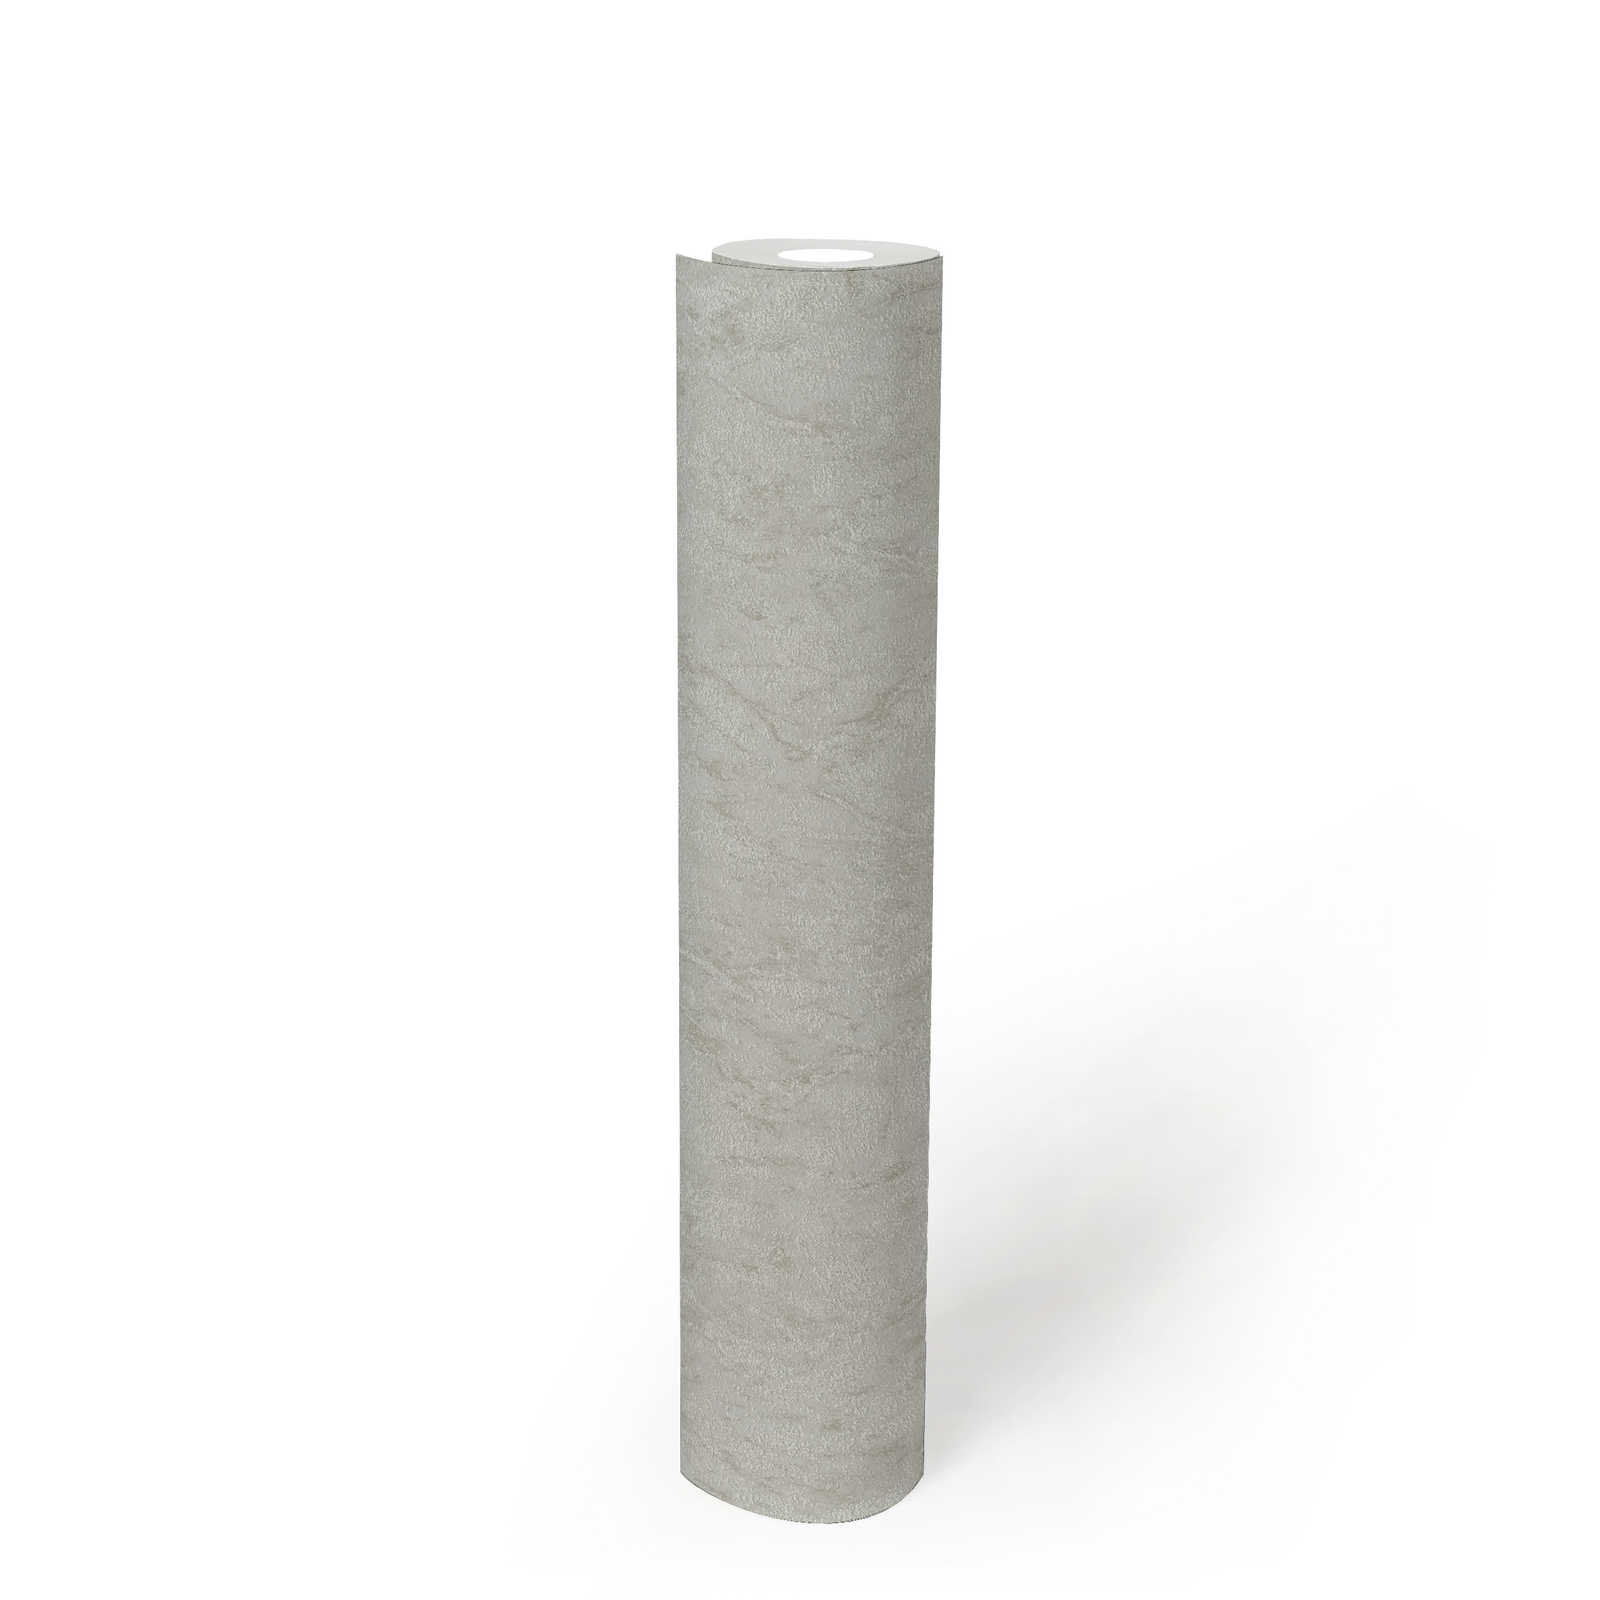             Papel pintado unitario con efecto texturizado y diseño moteado - gris, beige
        